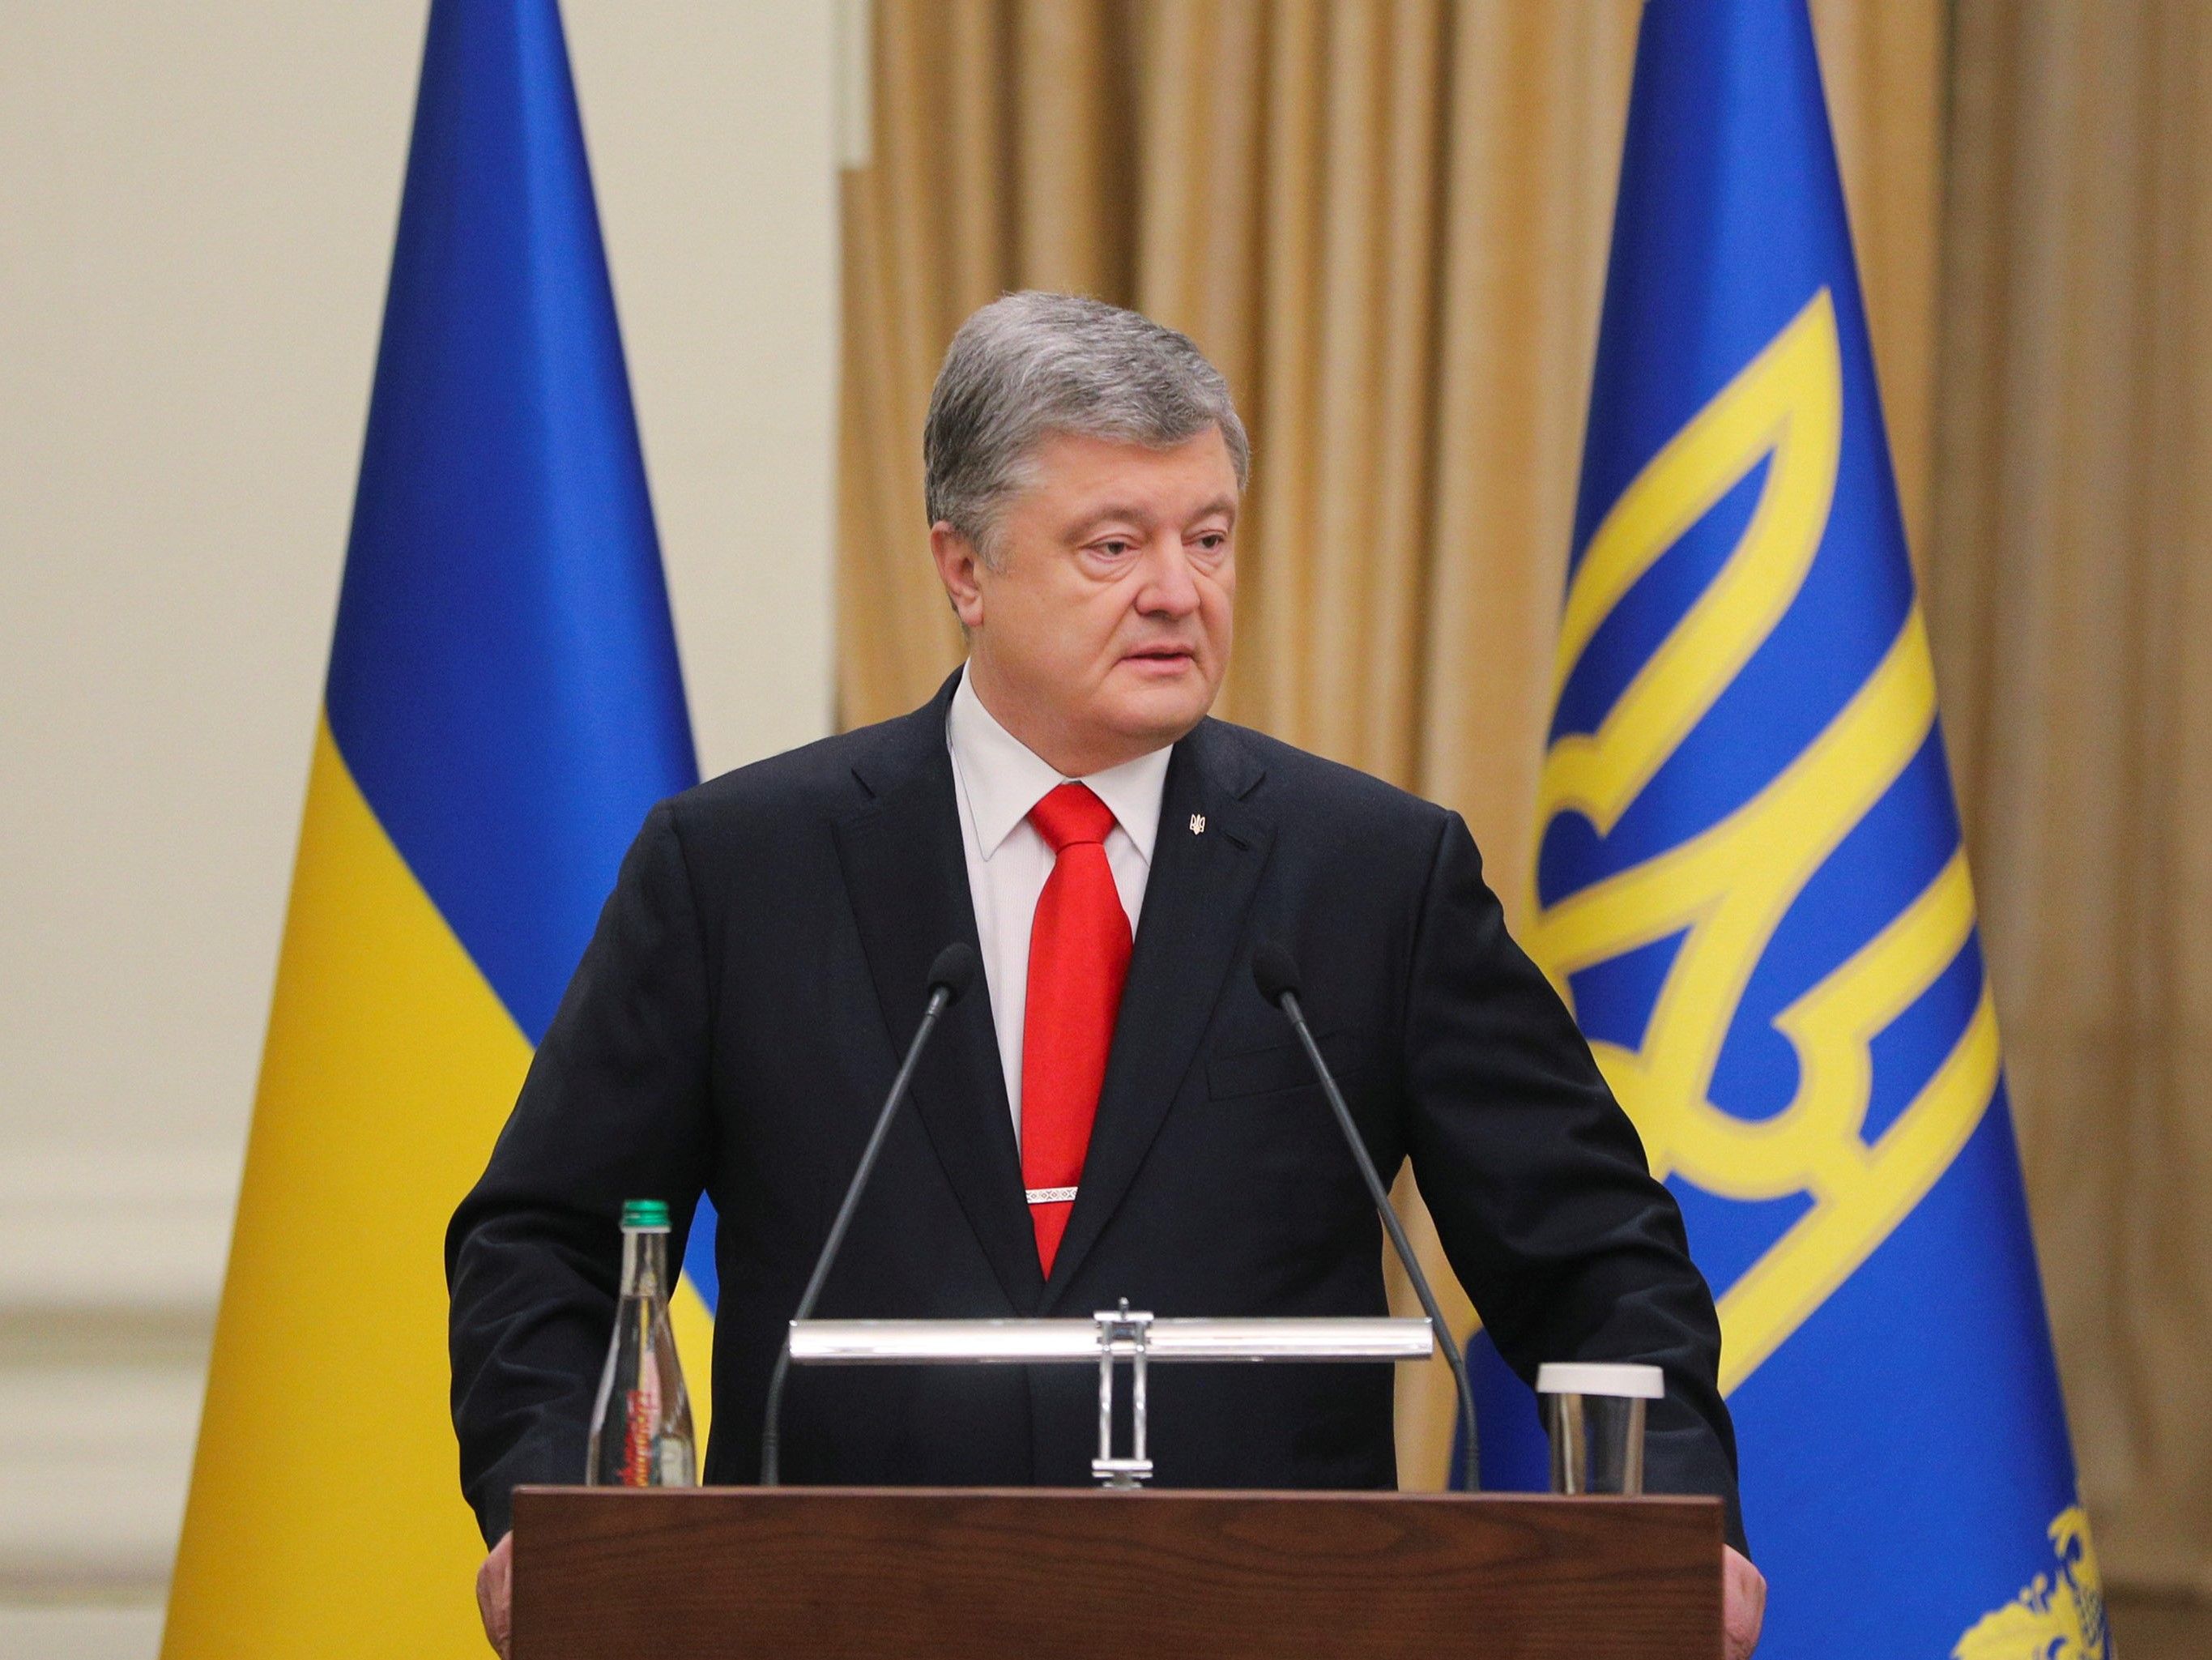 Вступ до НАТО є гарантією безпеки України - Петро Порошенко